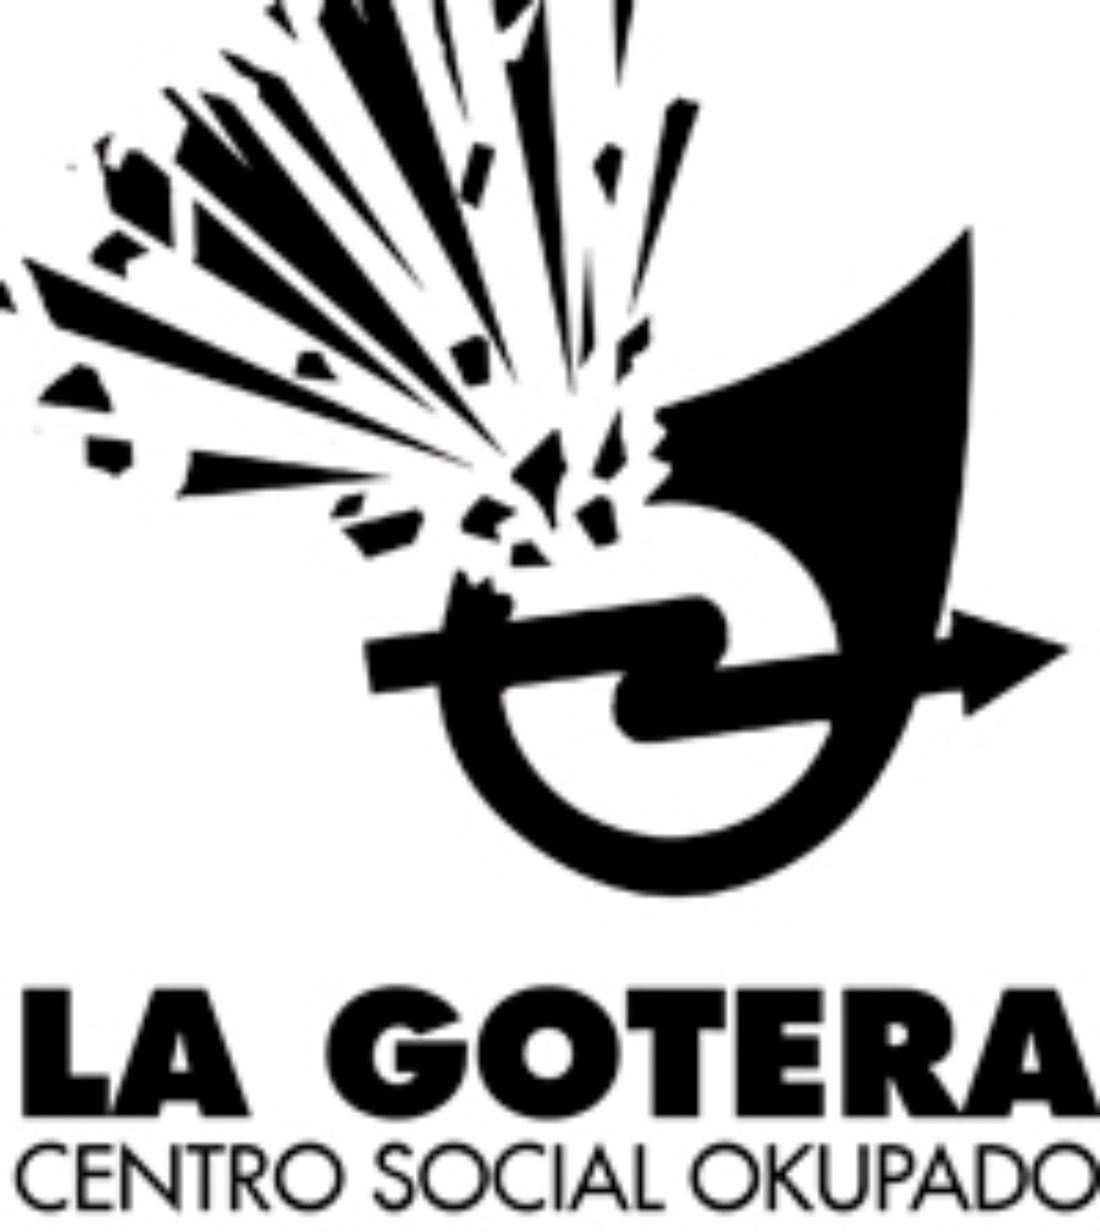 Desalojado el Centro Social Okupado “La Gotera” con las habituales formas abusivas de la policía